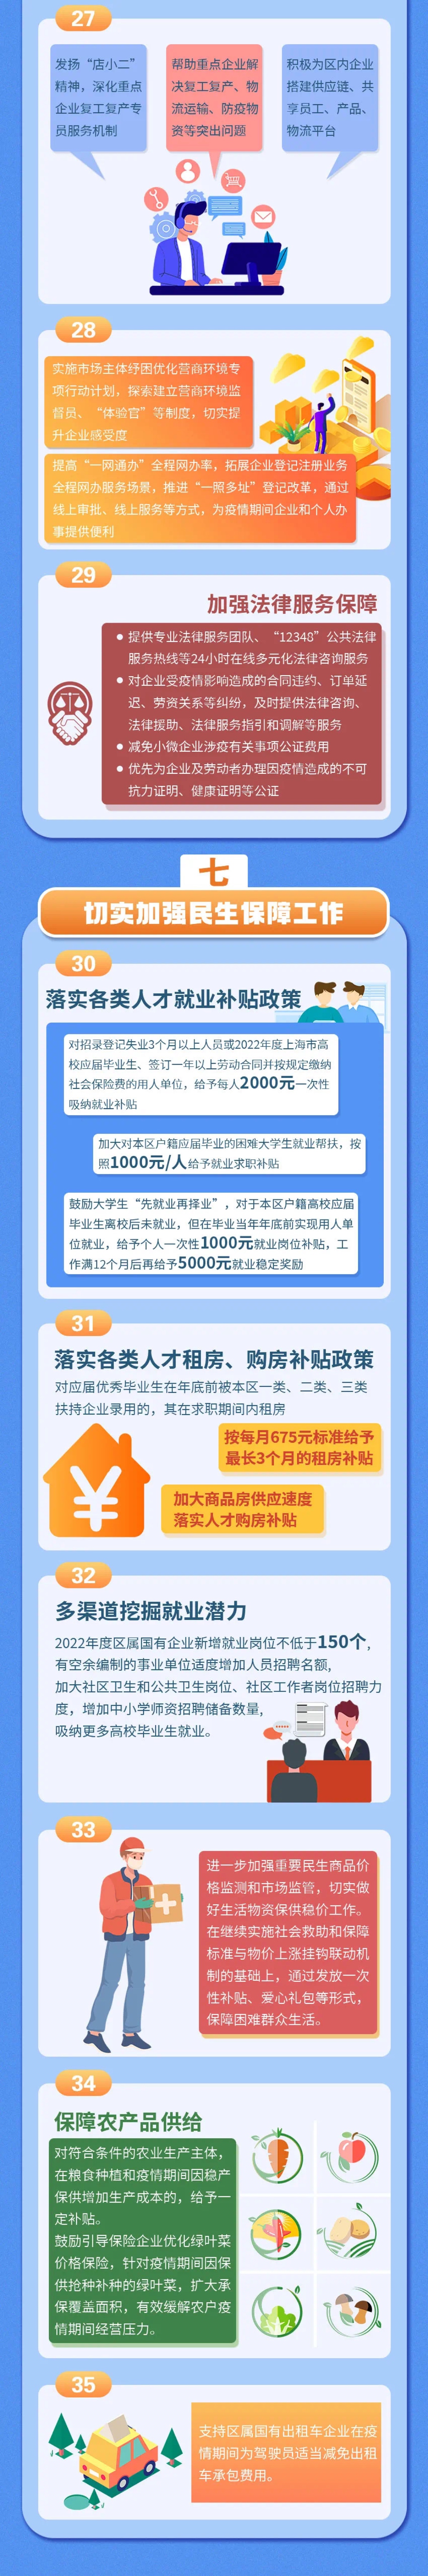 一图读懂《松江区加快经济恢复和重振的(de)实施方案》。 上海松江区融媒体中心 图